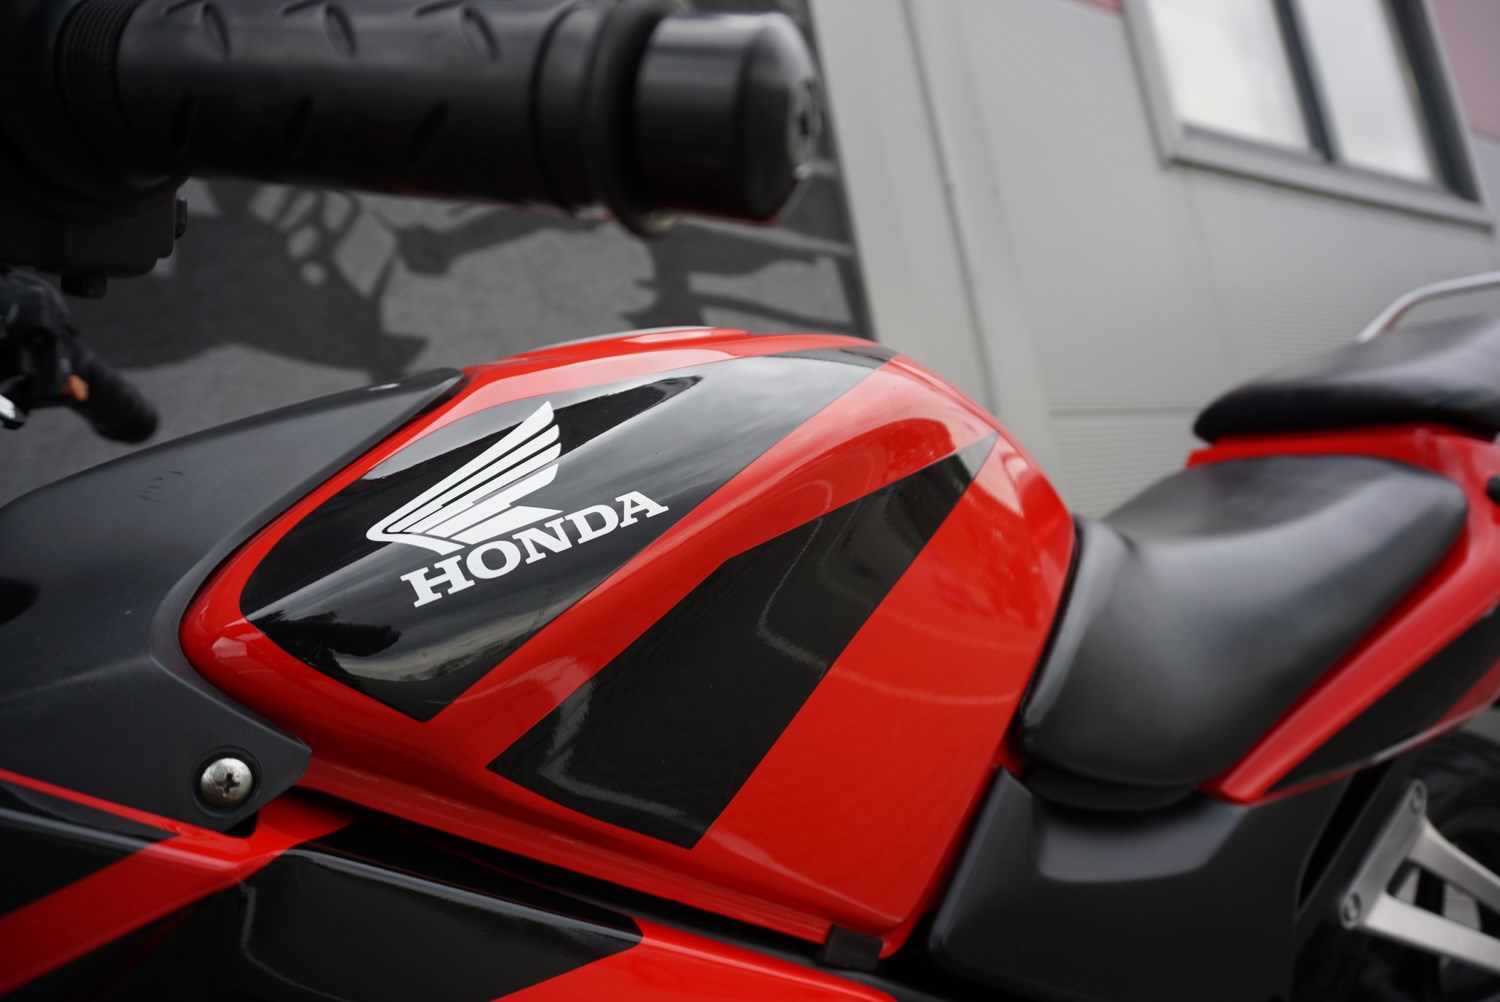 Honda CBR 125 R